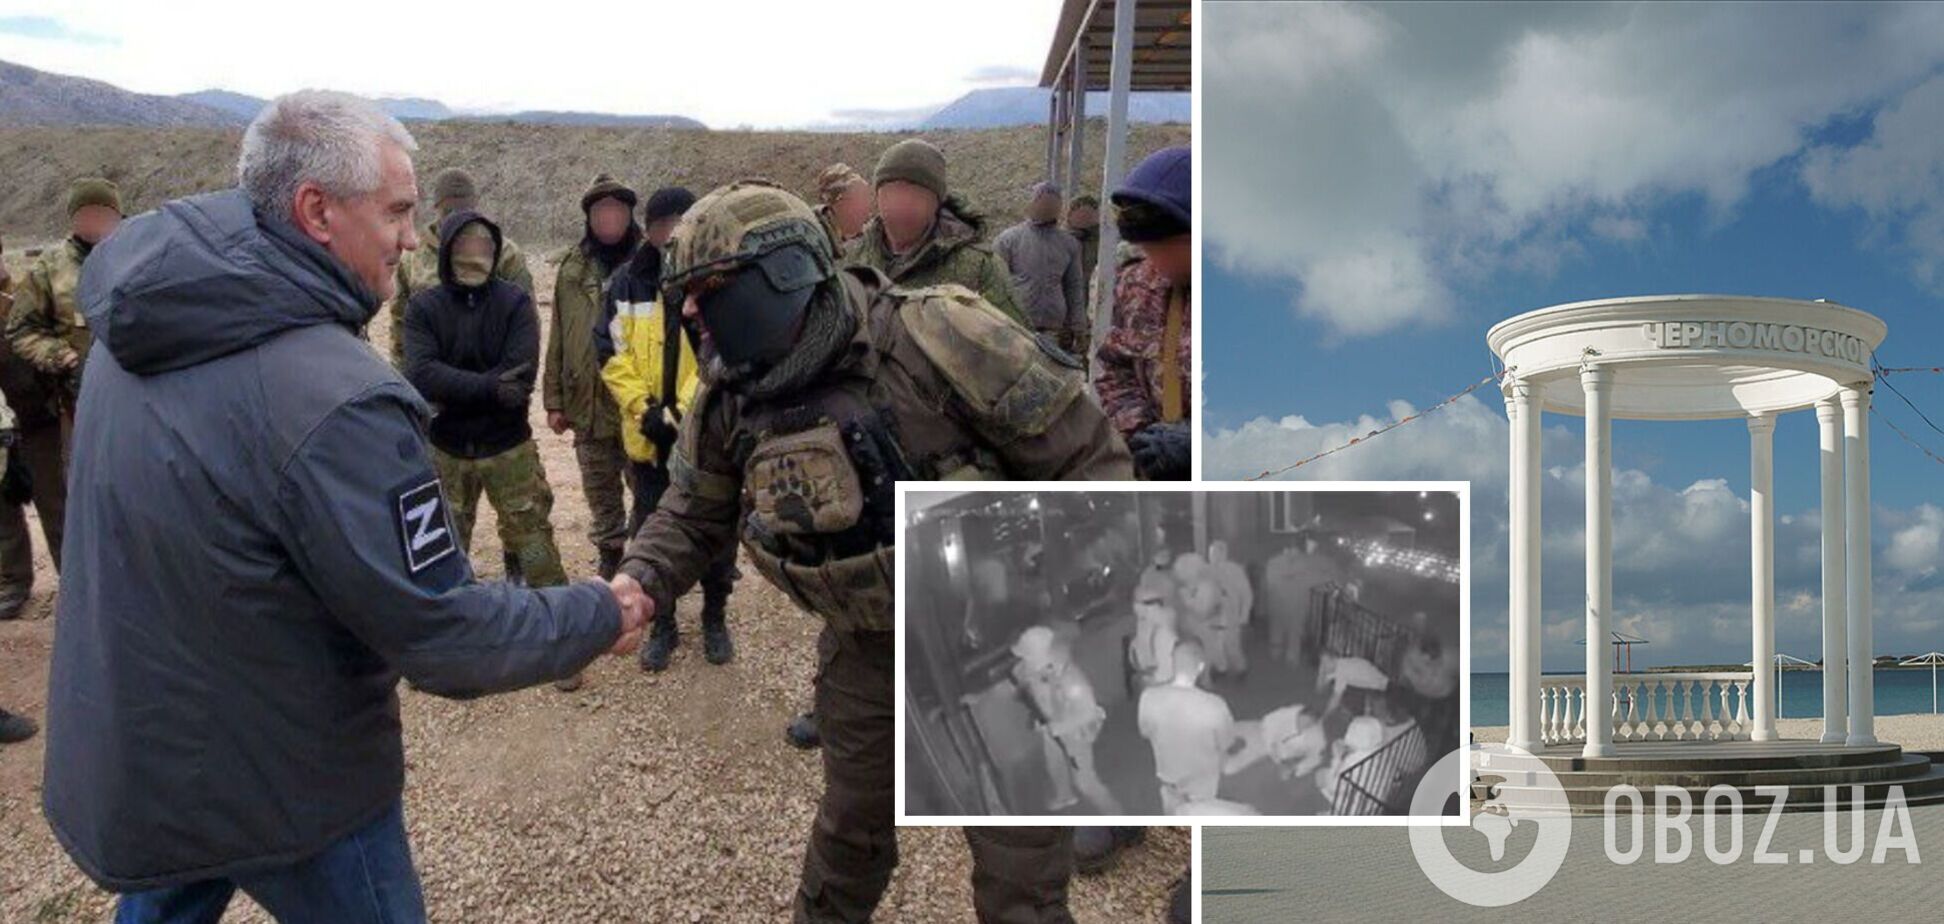 Российские военные устроили стрельбу и бойню в кафе в оккупированном Крыму: как их наказали. Фото и видео